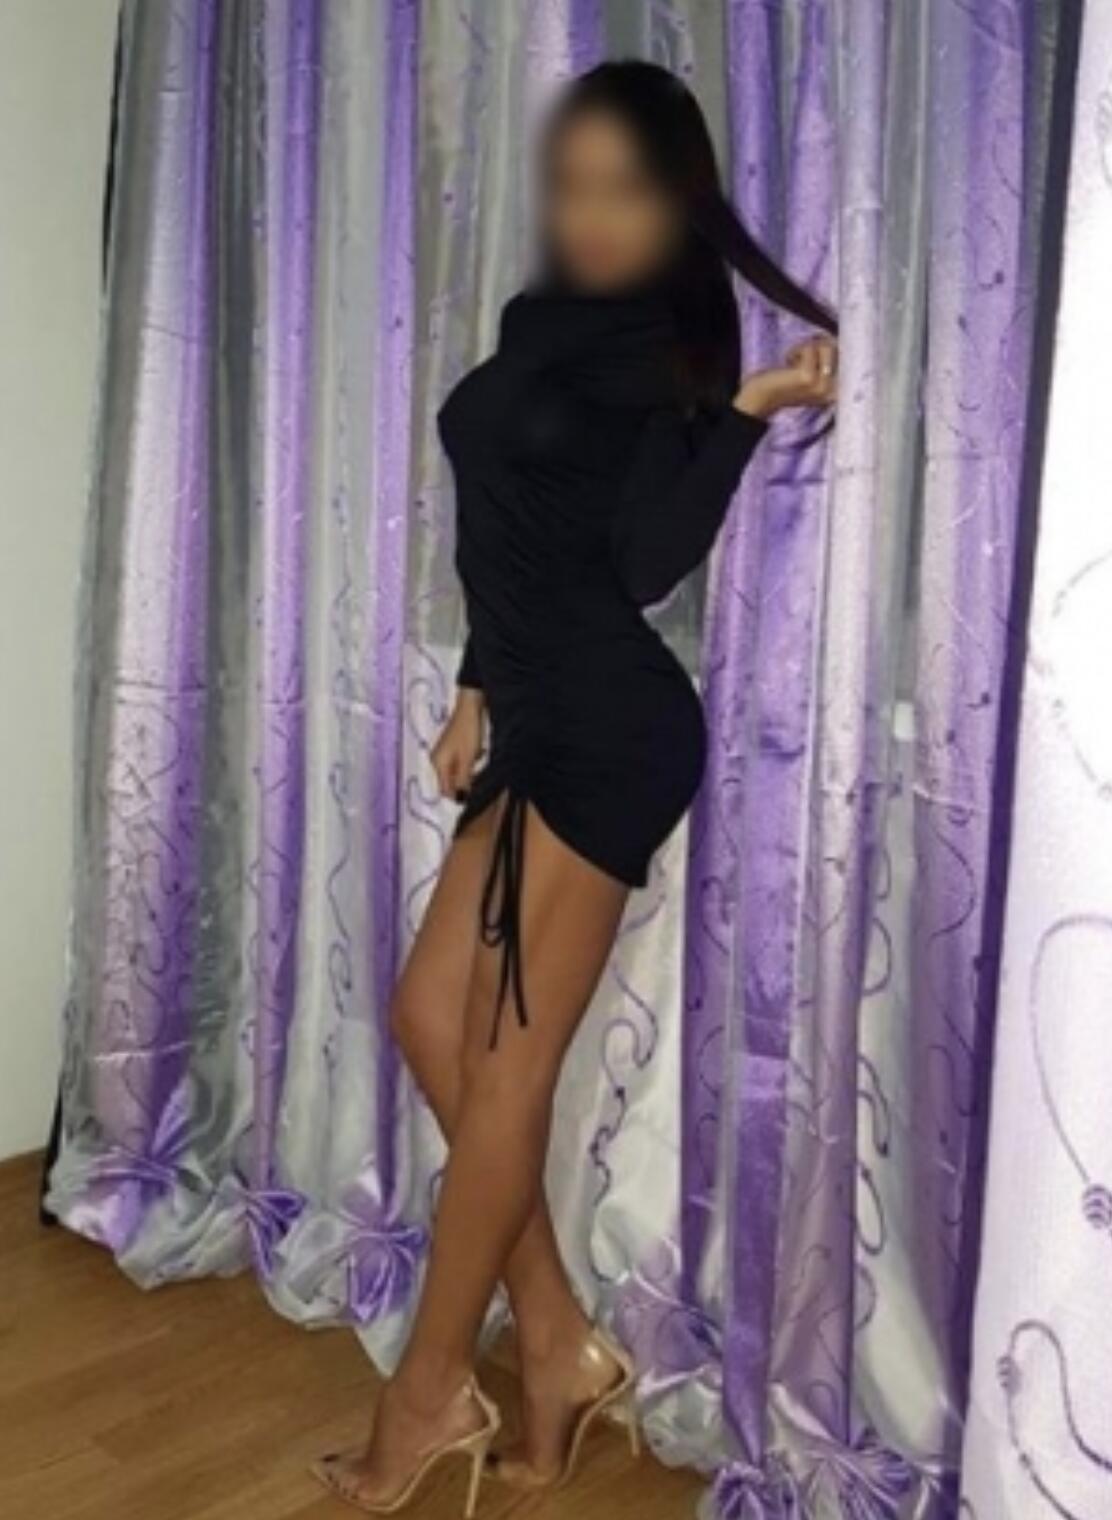 Проститутка Карина, фото 5, тел: 0509335238. В центре города - Киев